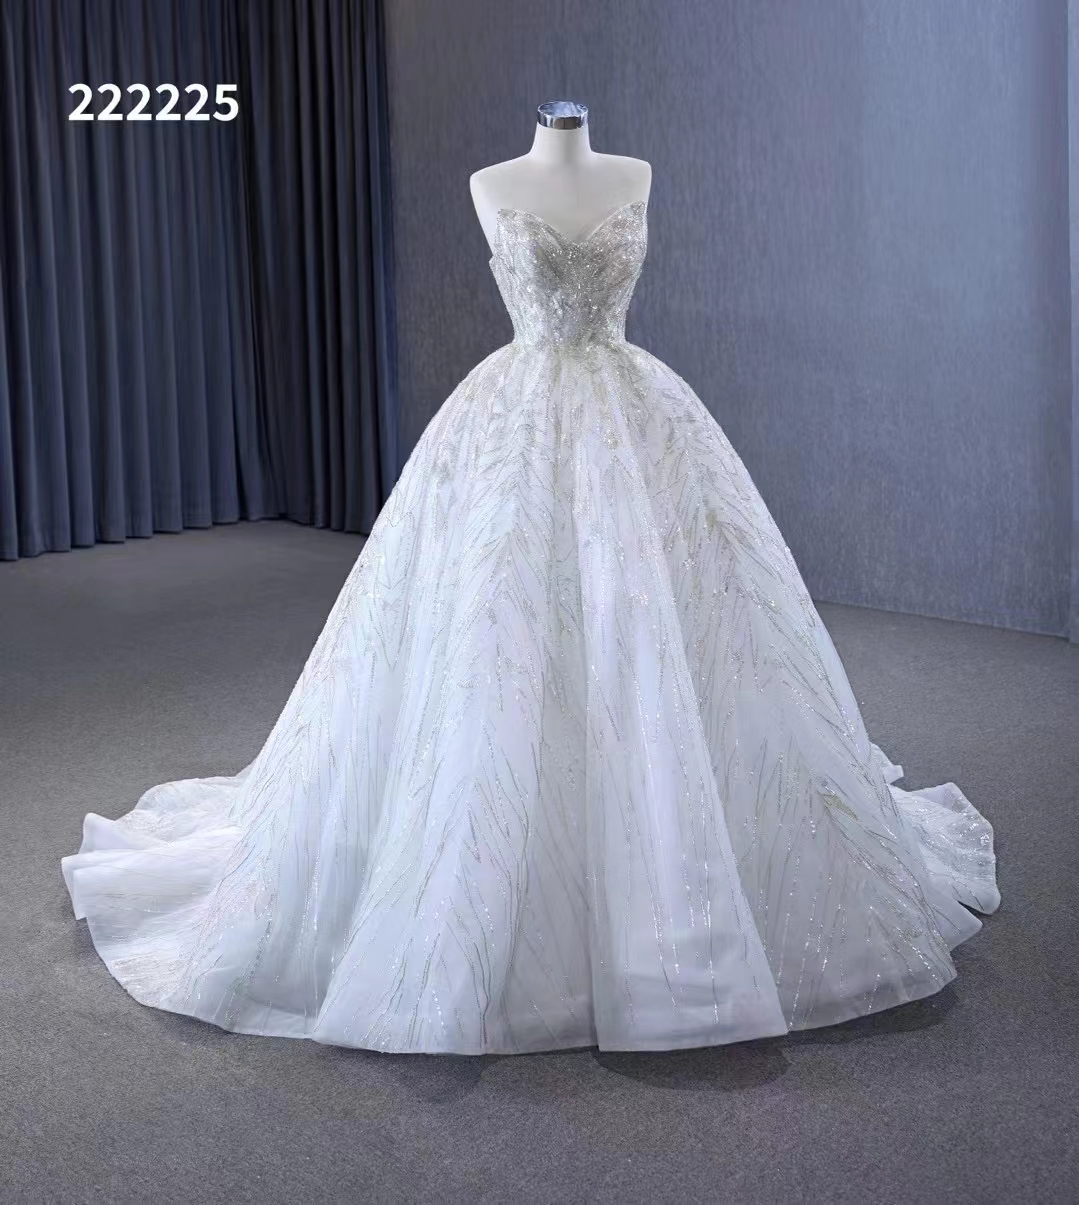 Älskling bröllopsklänning lyxig ärmlös pärlstalad paljett SM222225